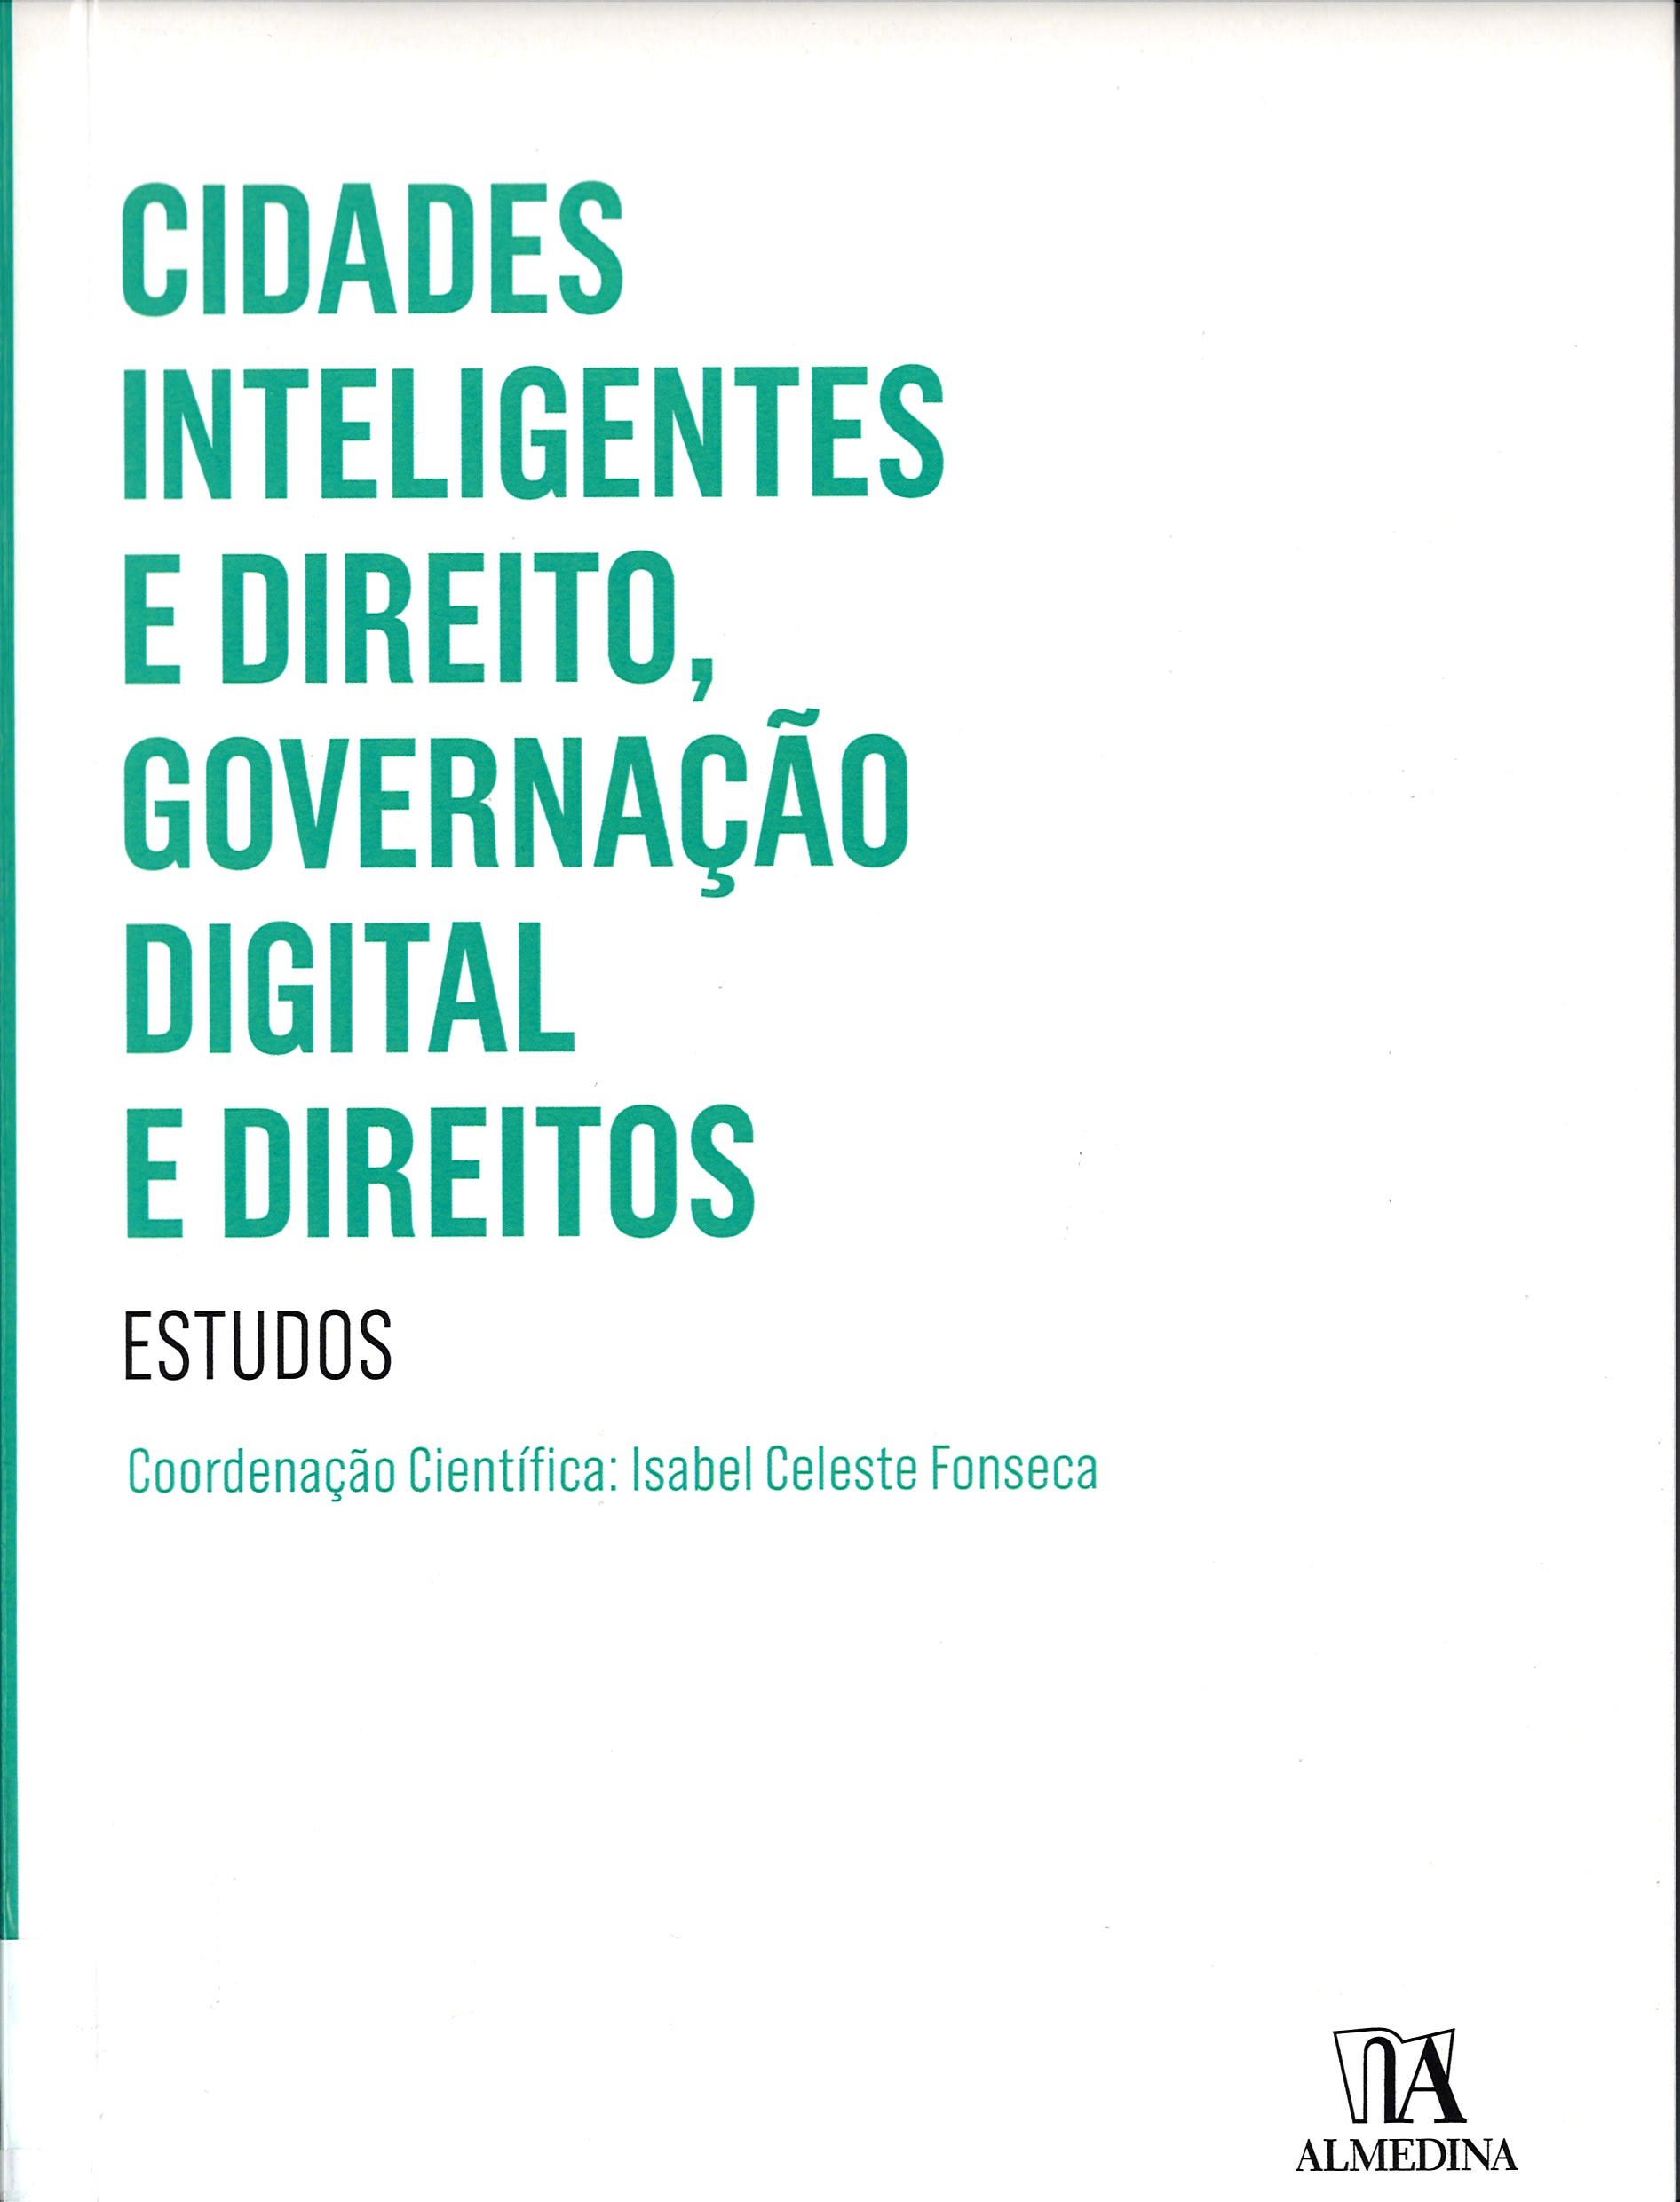 Imagen de portada del libro Cidades inteligentes e direito, governação digital e direitos: estudos